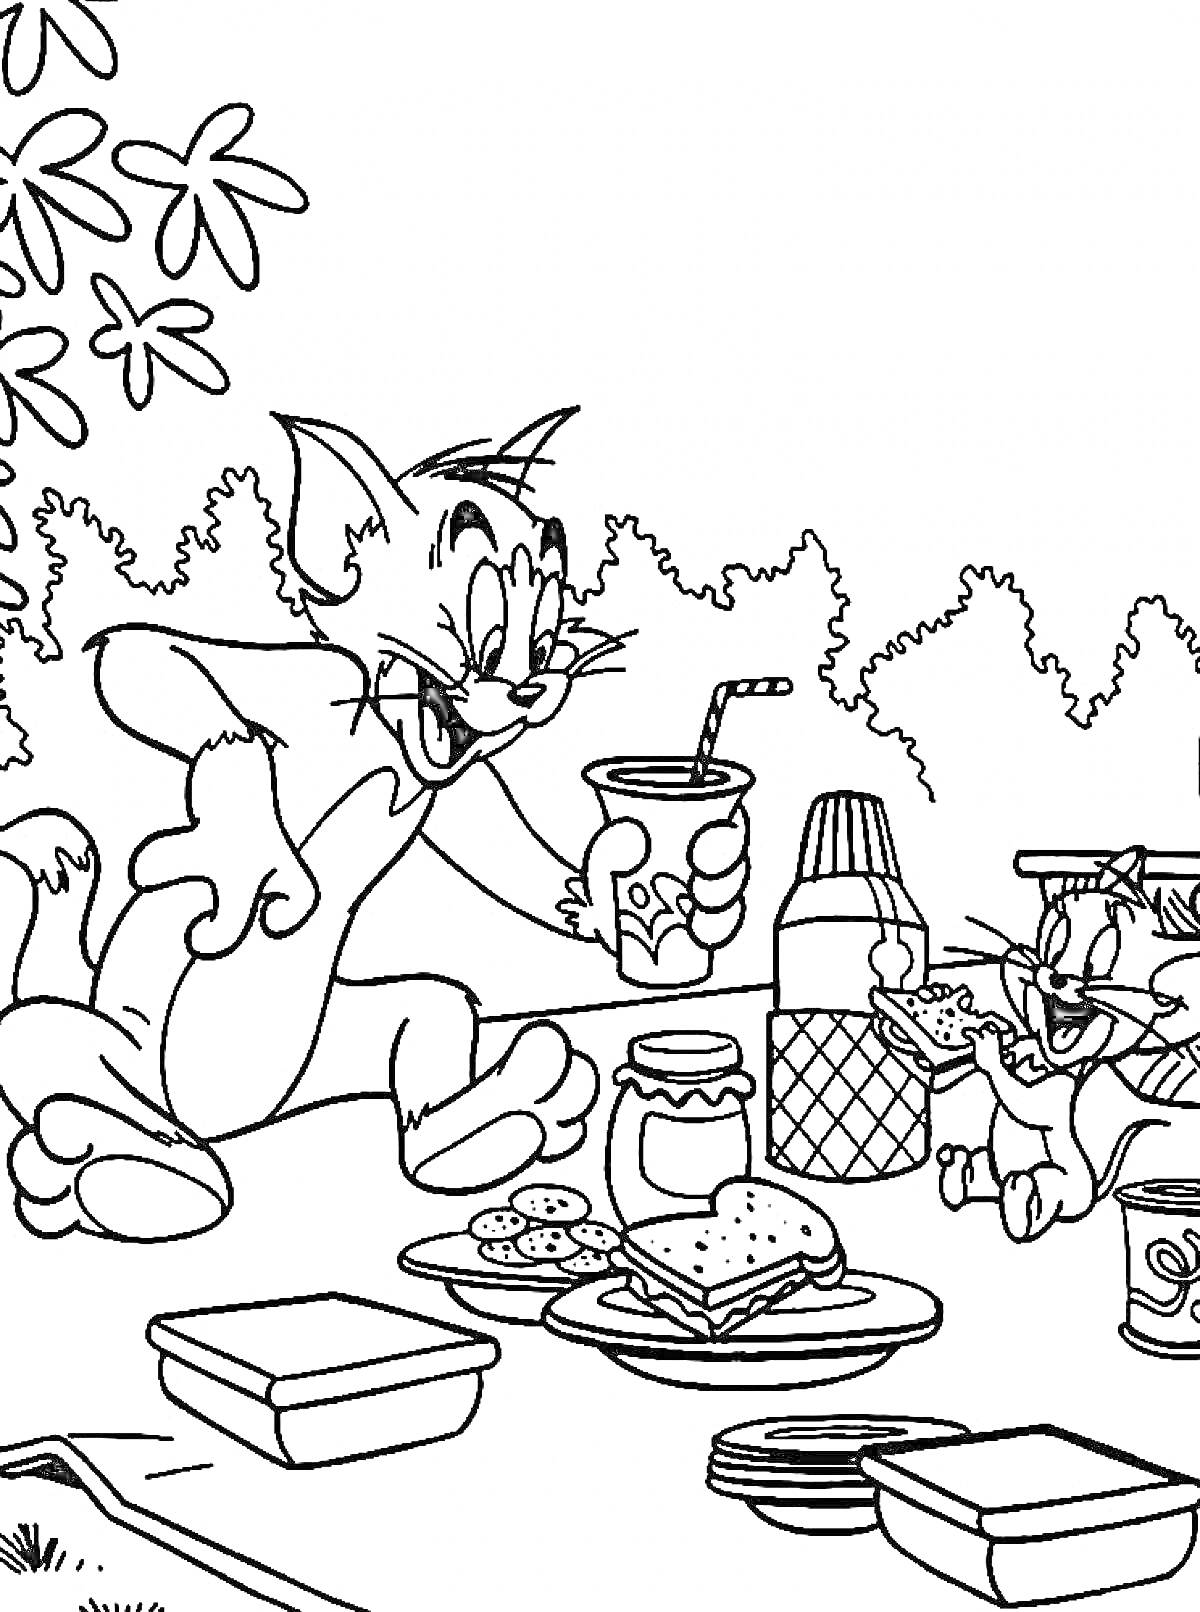 Раскраска Пикник Тома и Джерри под деревьями с бутербродами, печеньем и напитками